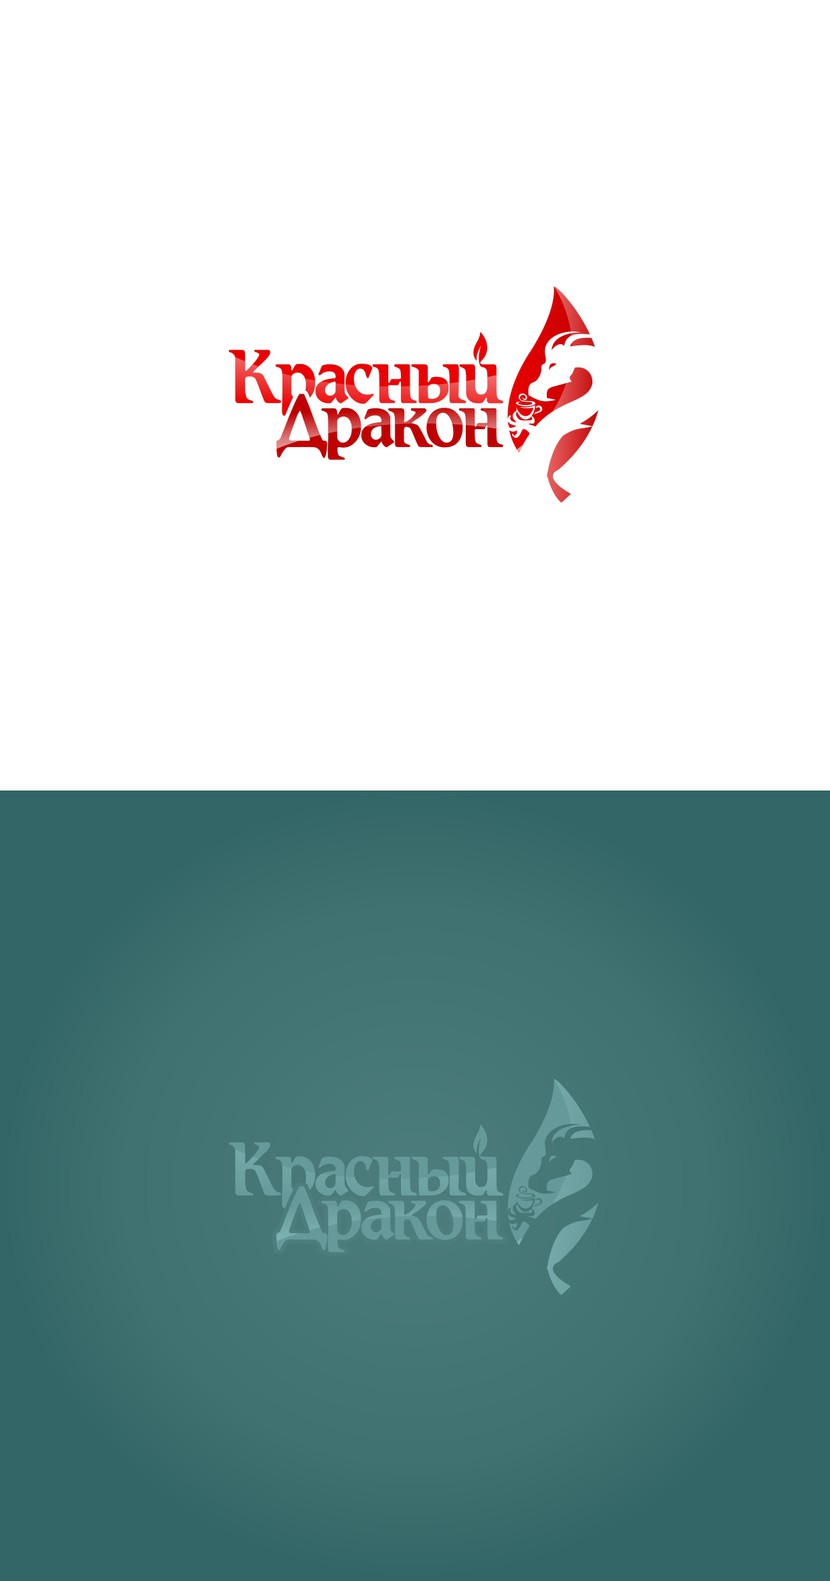 Красный Дракон logo 09 - Разработка логотипы для чайного магазина "Красный Дракон"